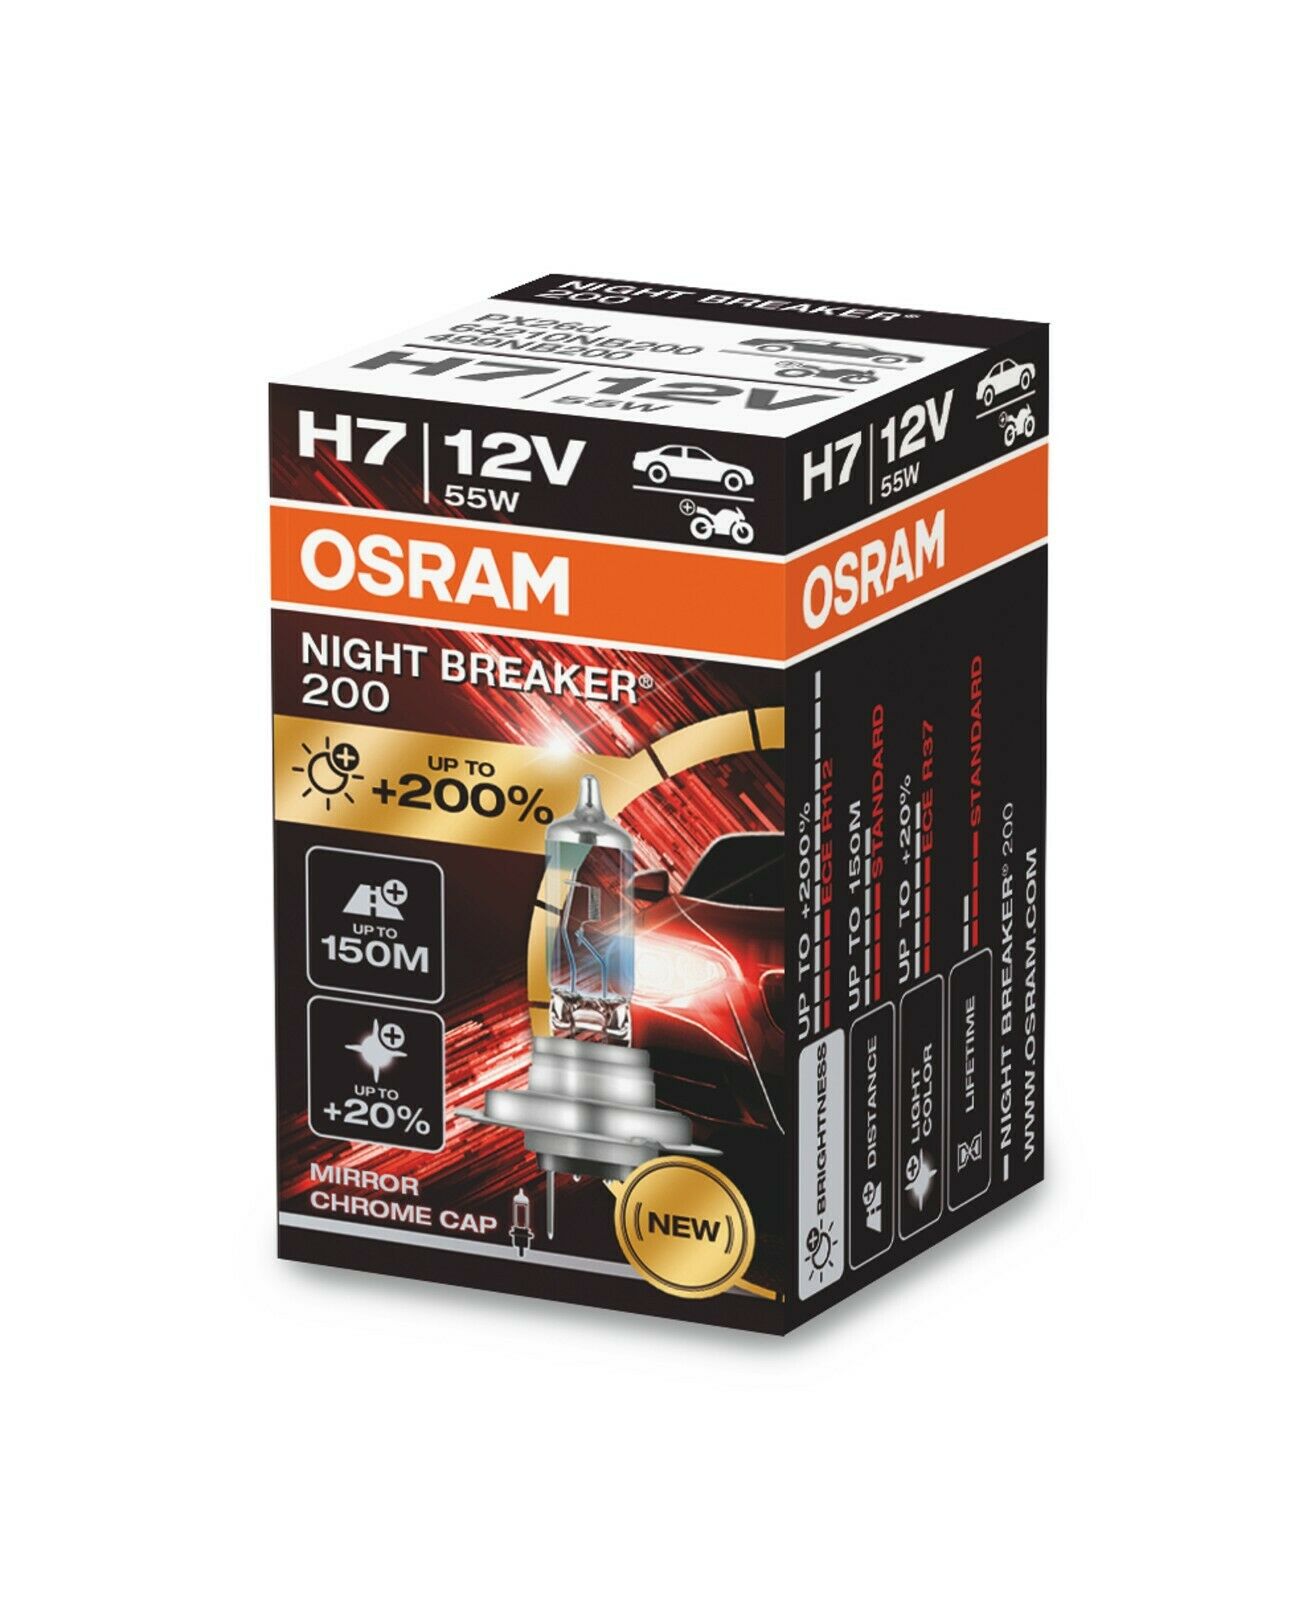 220% und +200% WARUM? OSRAM Night Breaker Laser NEXT GEN